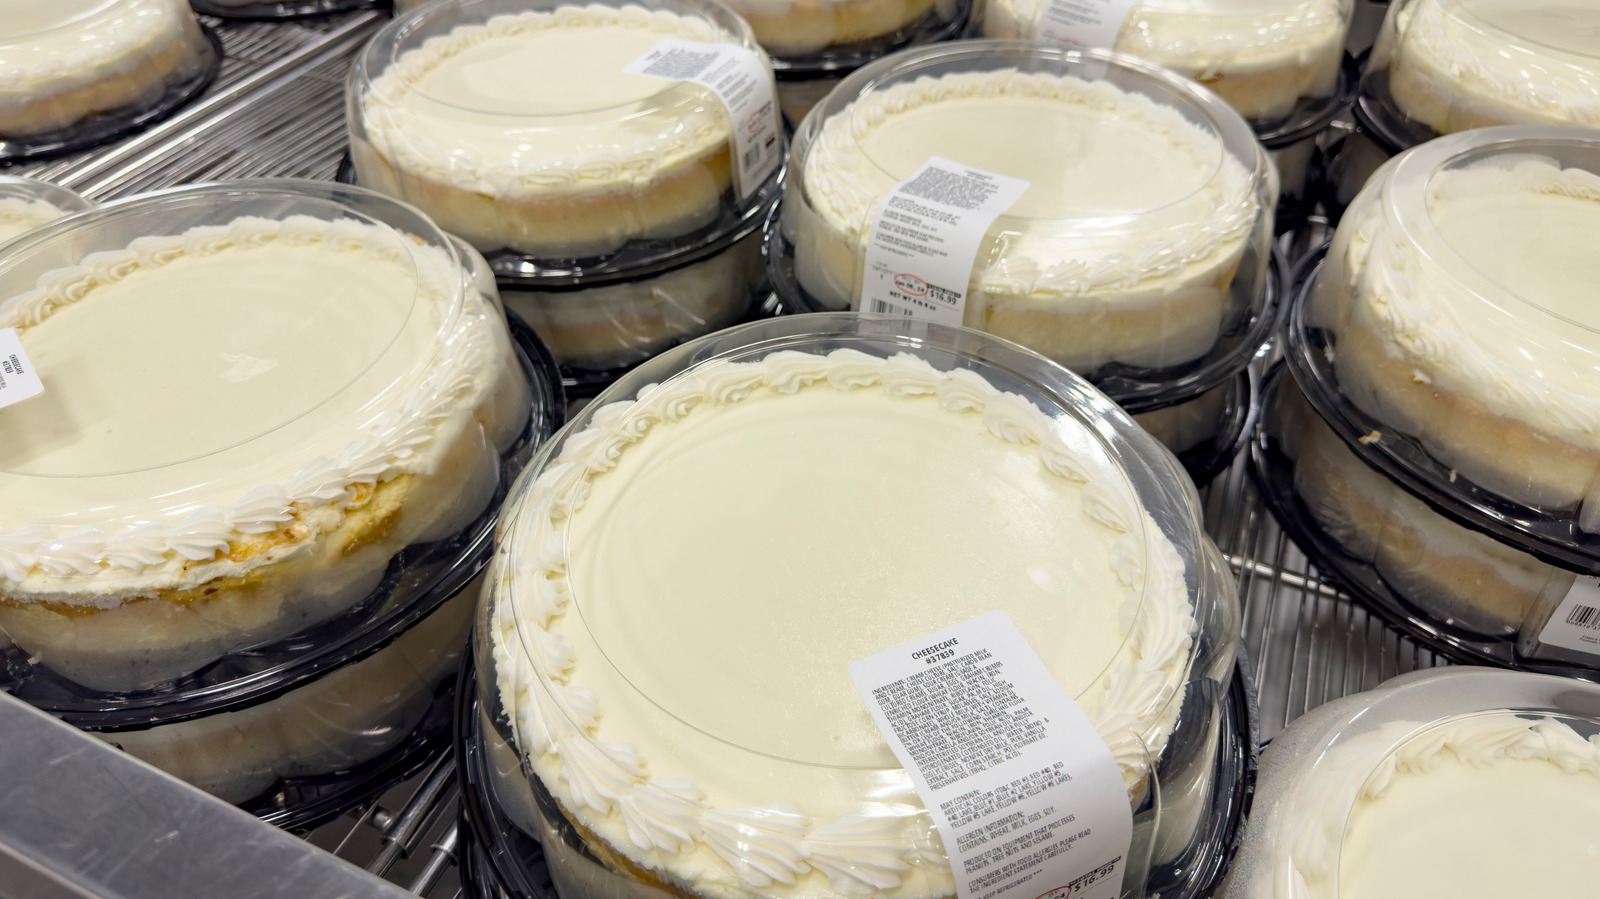 تأتي كعكة الجبن التوتية المختلطة التي يبلغ وزنها 5 رطل من كوستكو بسعر باهظ بنفس القدر